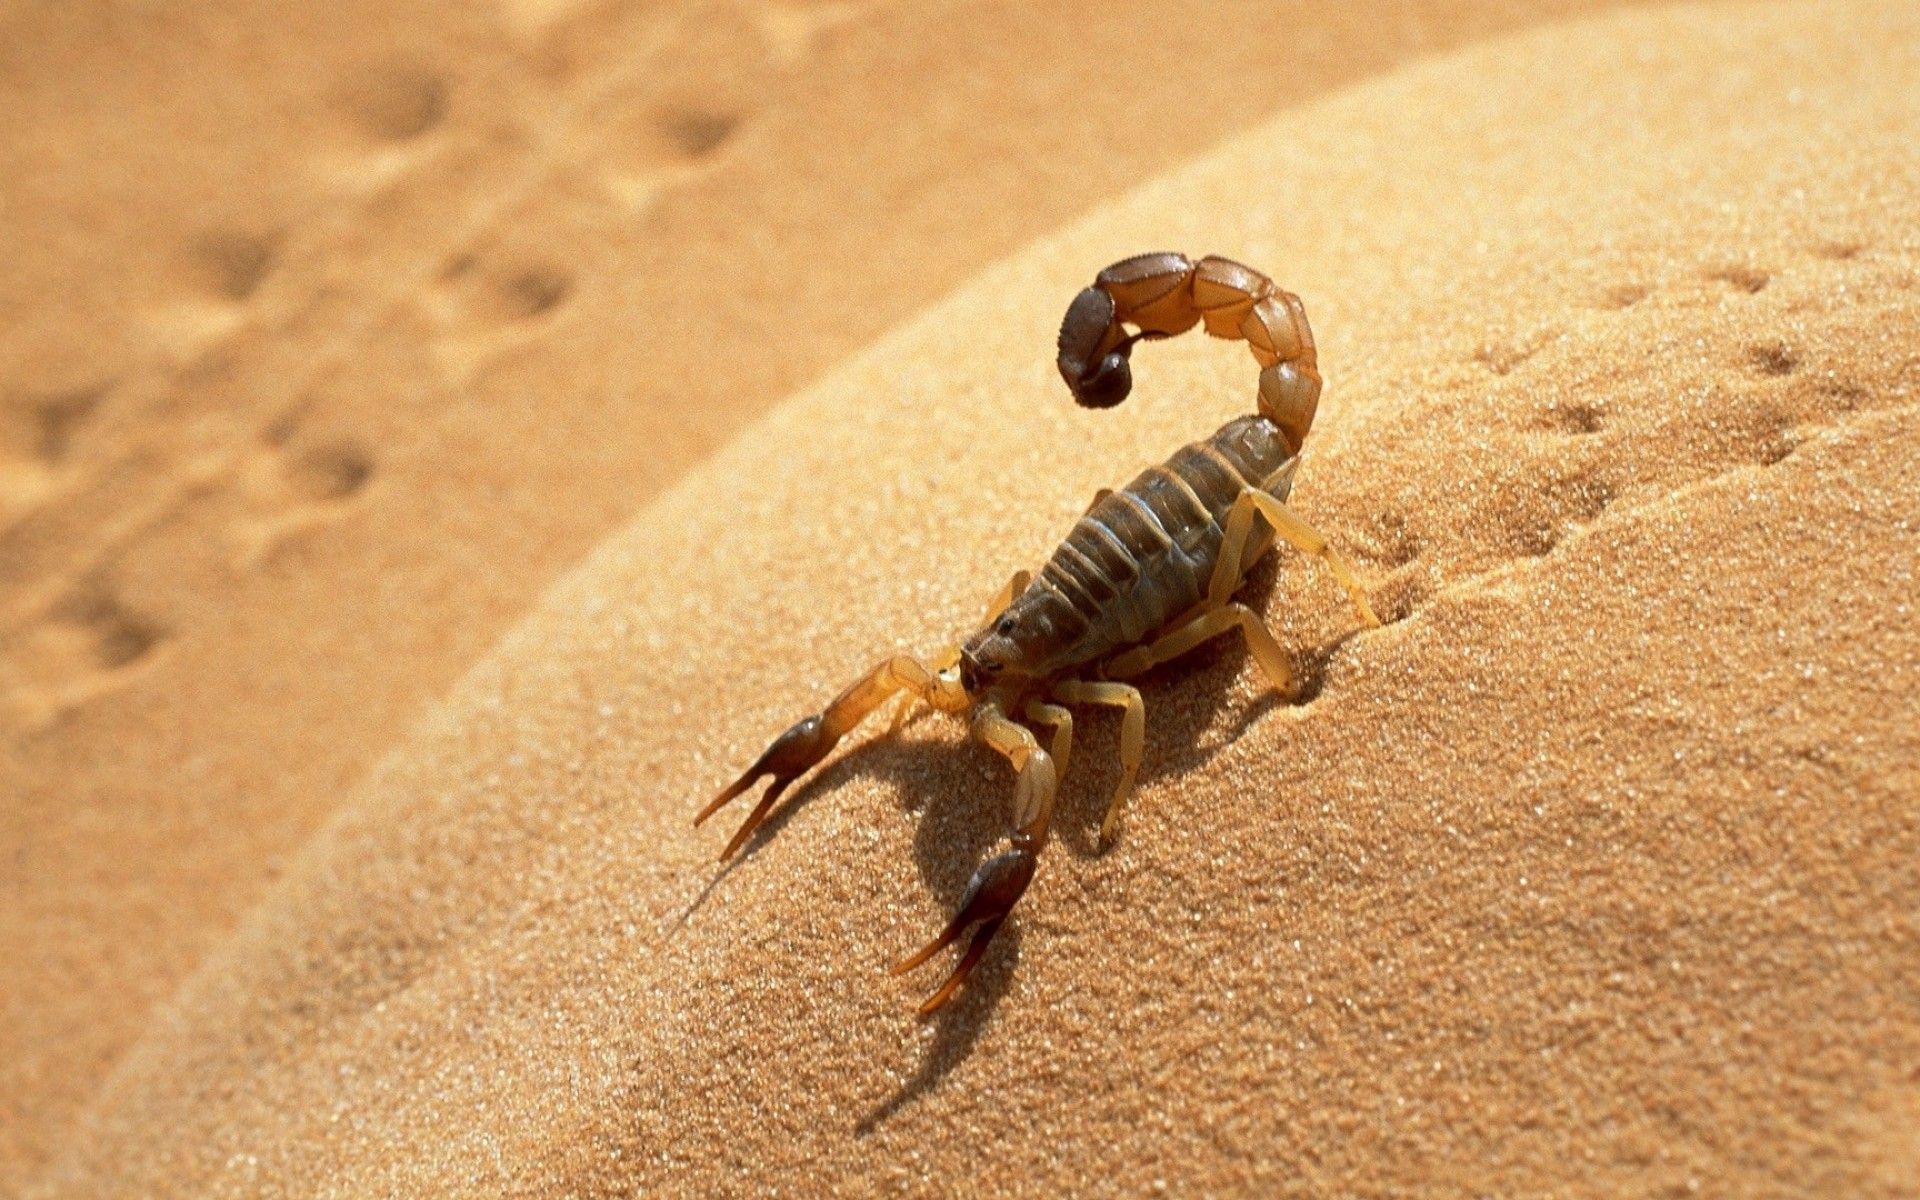 HD wallpaper, Scorpion, Desert